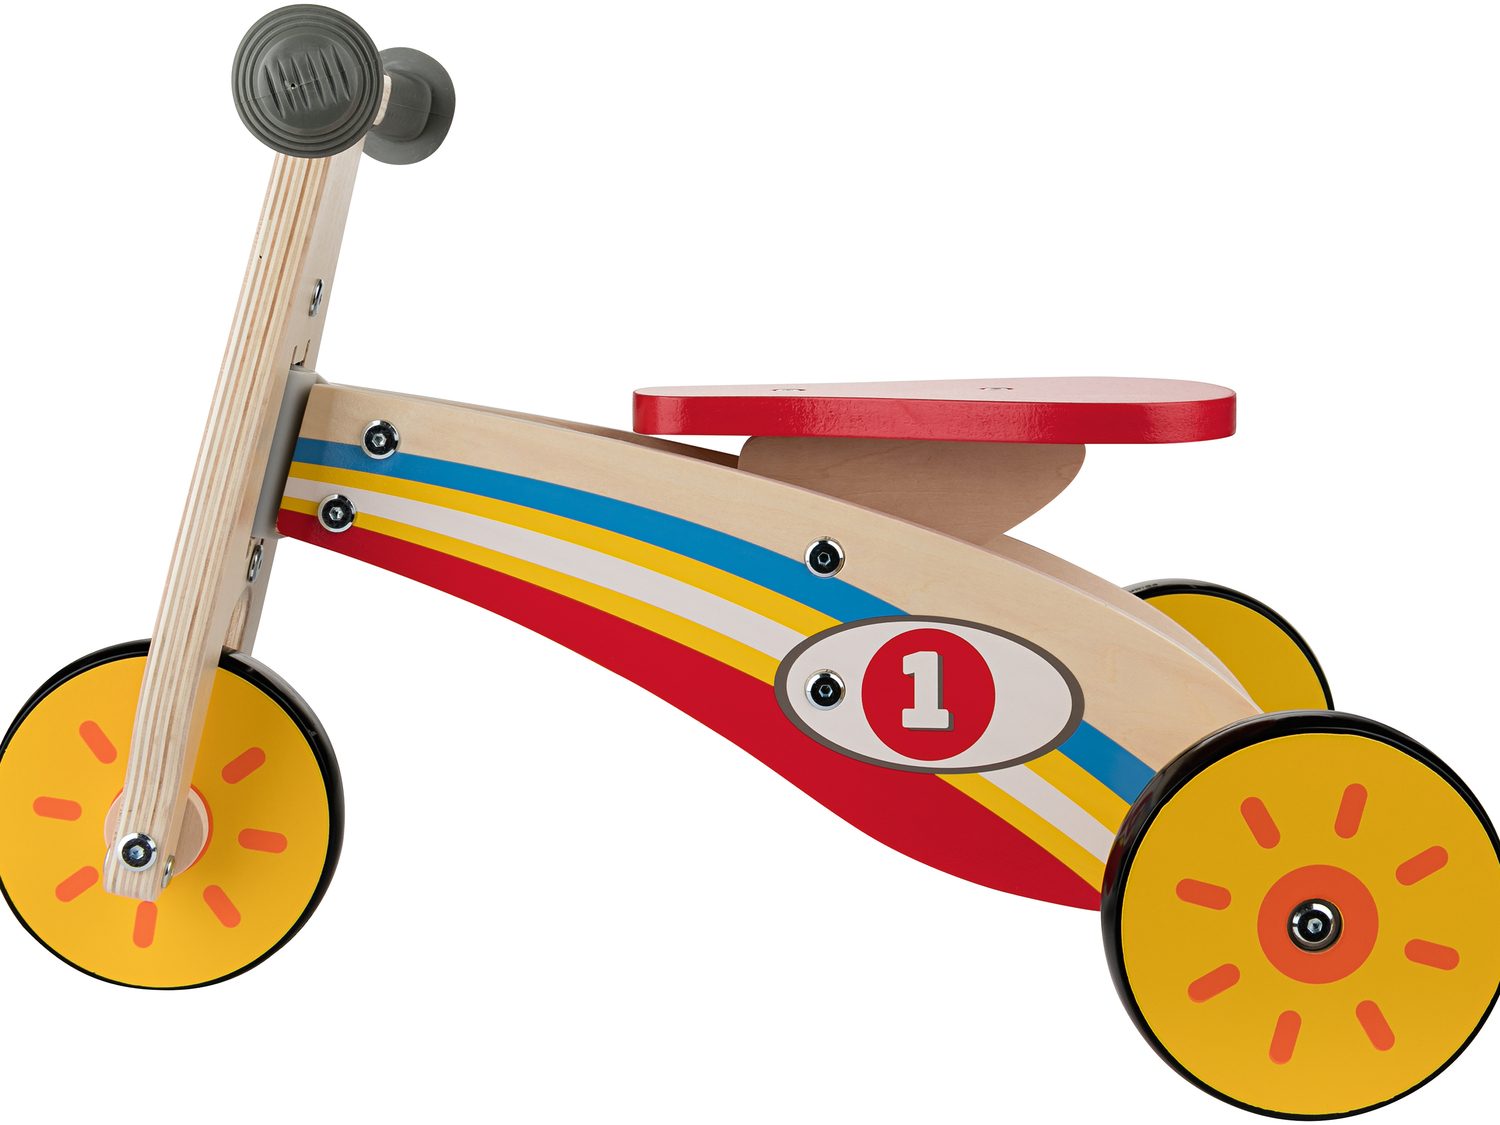 Drewniany rower biegowy Playtive Junior, cena 99,00 PLN 
- trening równowagi i ...